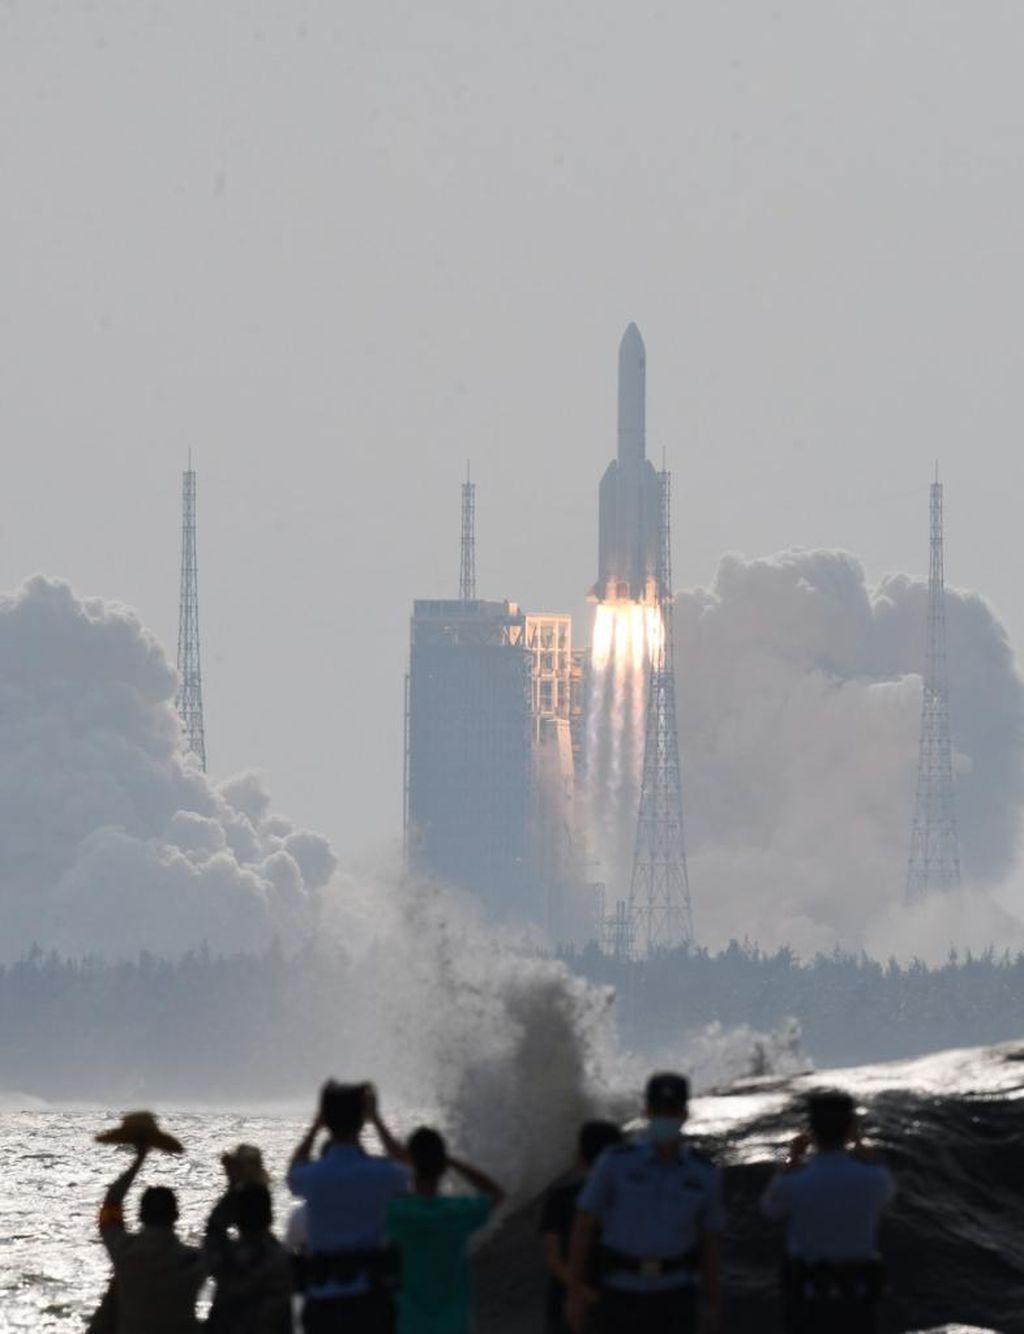 Roket Long March-5B Y4 meluncur dari Pusat Peluncuran Antariksa Wenchang, Provinsi Hainan, China, pada 31 Oktober 2022. Roket ini hendak mengirimkan modul Mengtian yang merupakan bagian dari pembangunan stasiun luar angkasa China, Tiangong.